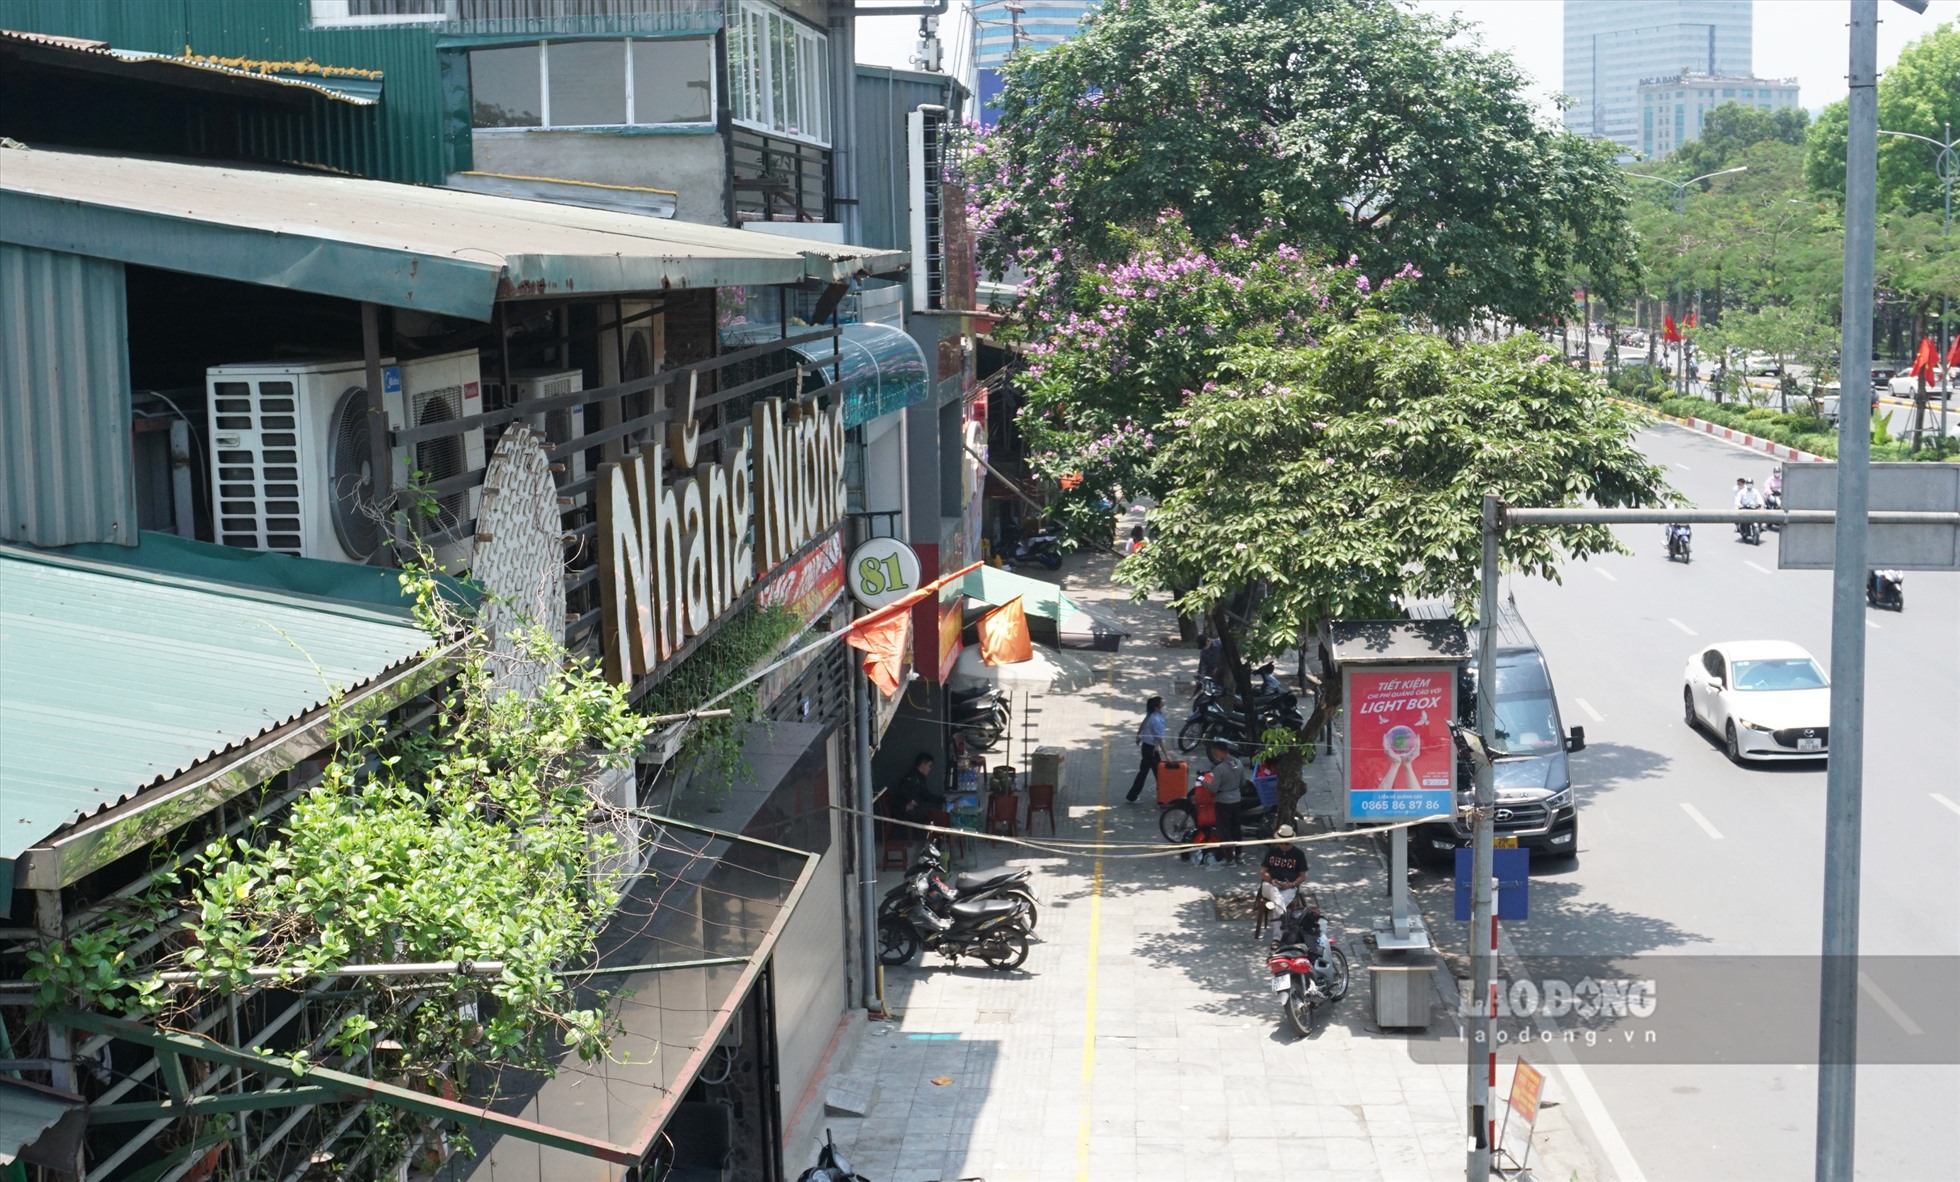 Vỉa hè phố Đại Cồ Việt - Trần Khát Chân cũng được đánh giá đủ điều kiện cho thuê để kinh doanh.